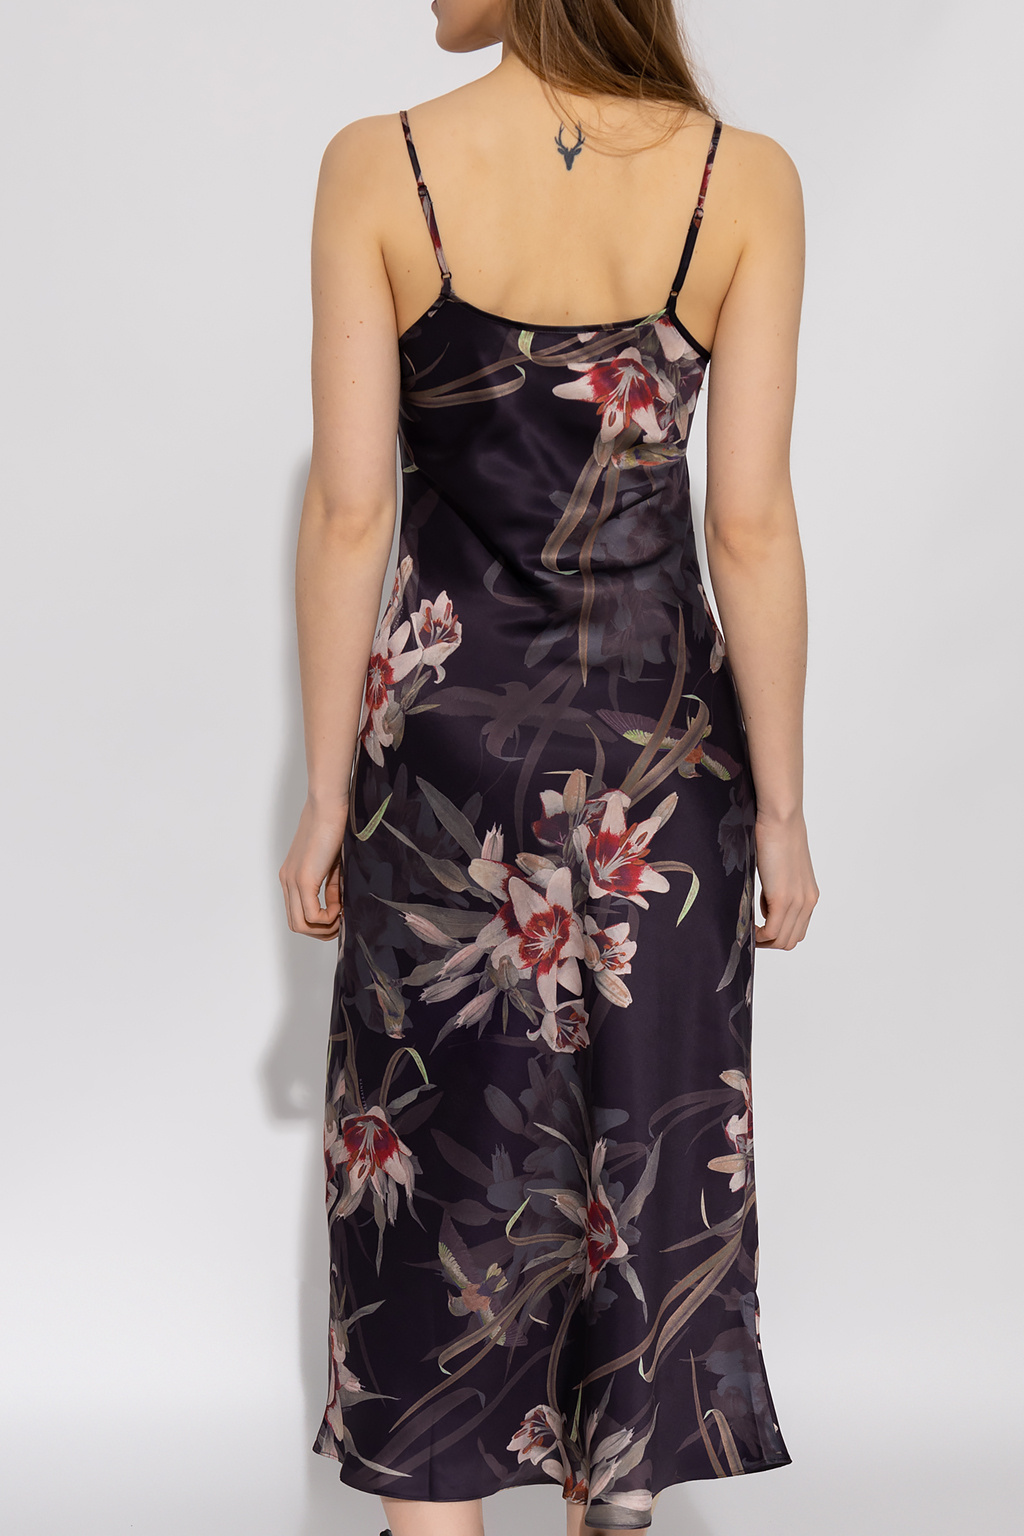 Louis Vuitton Floral Print Slip Dress Dark Red. Size 36